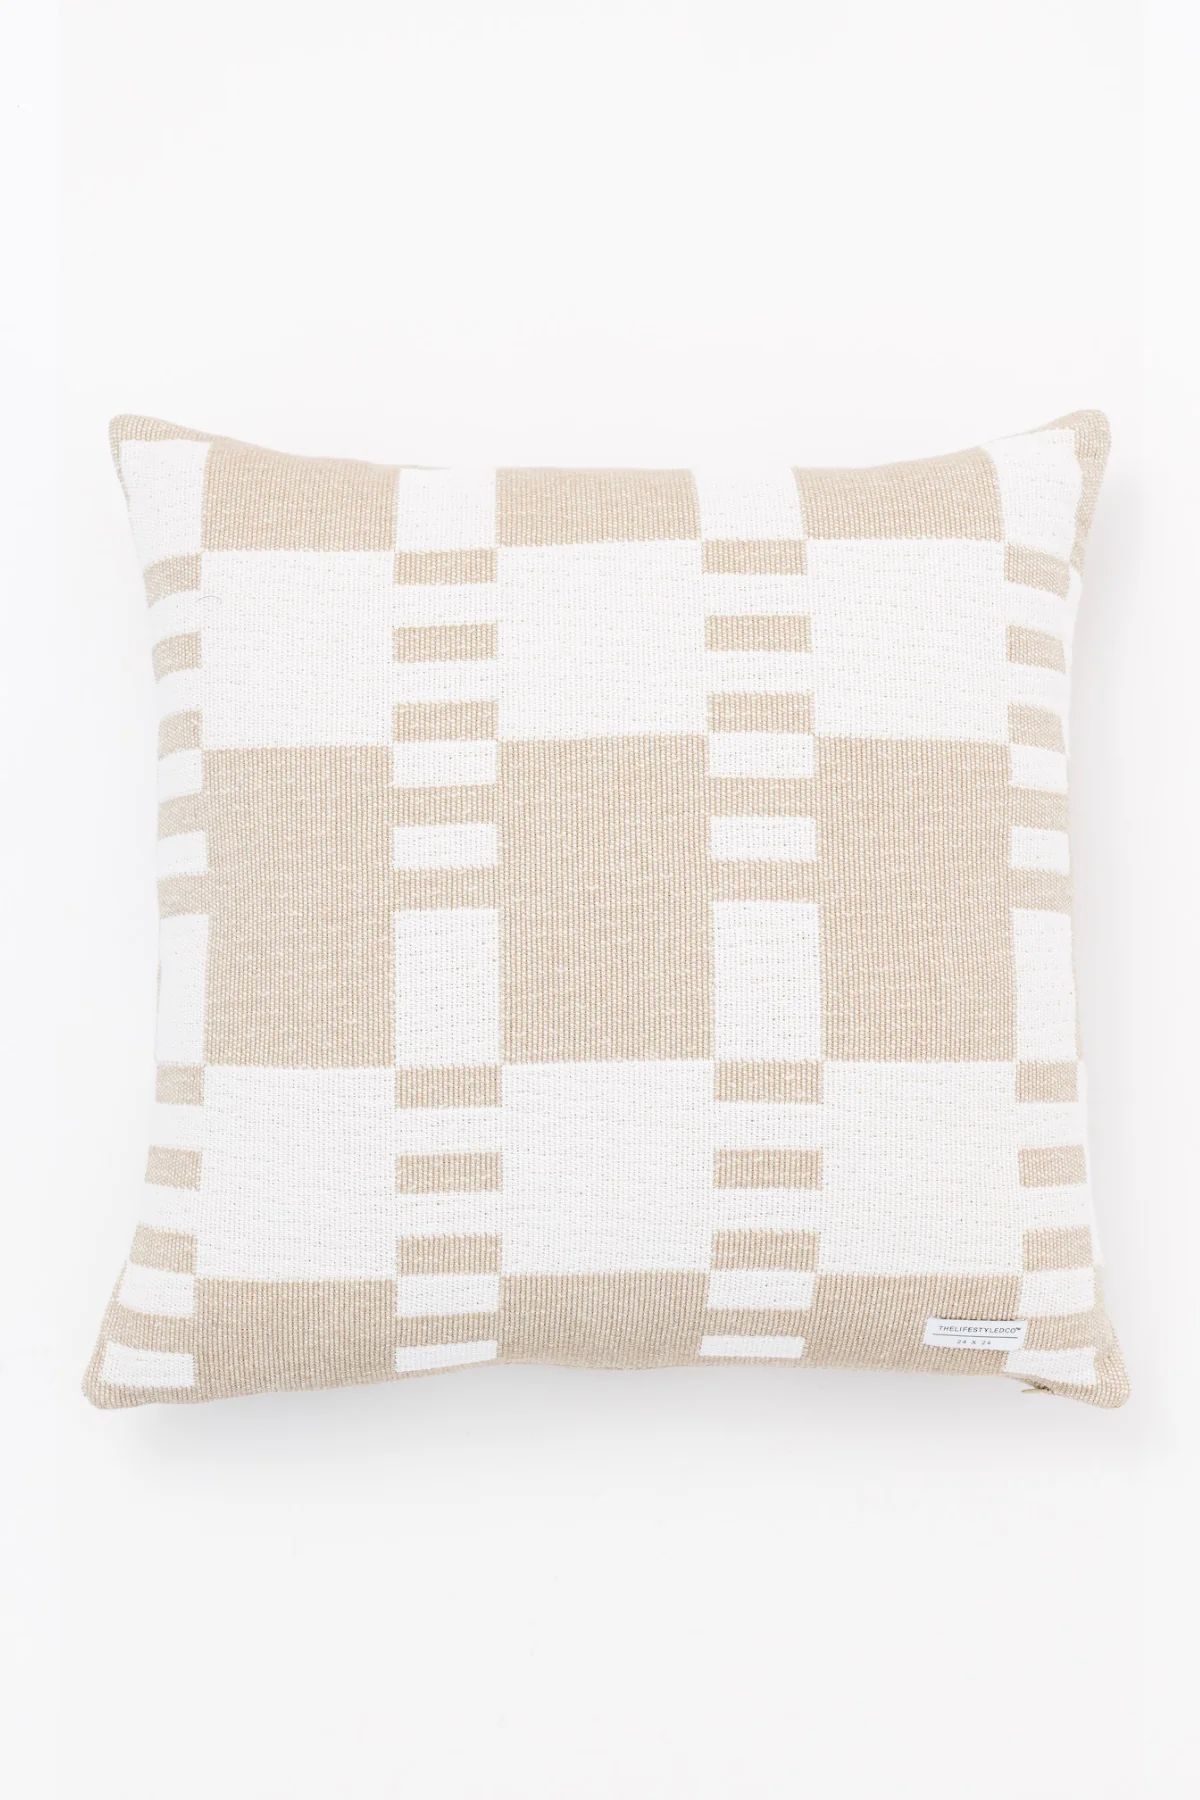 Proper Stripe Pillow - White/Tan - 2 Sizes | THELIFESTYLEDCO